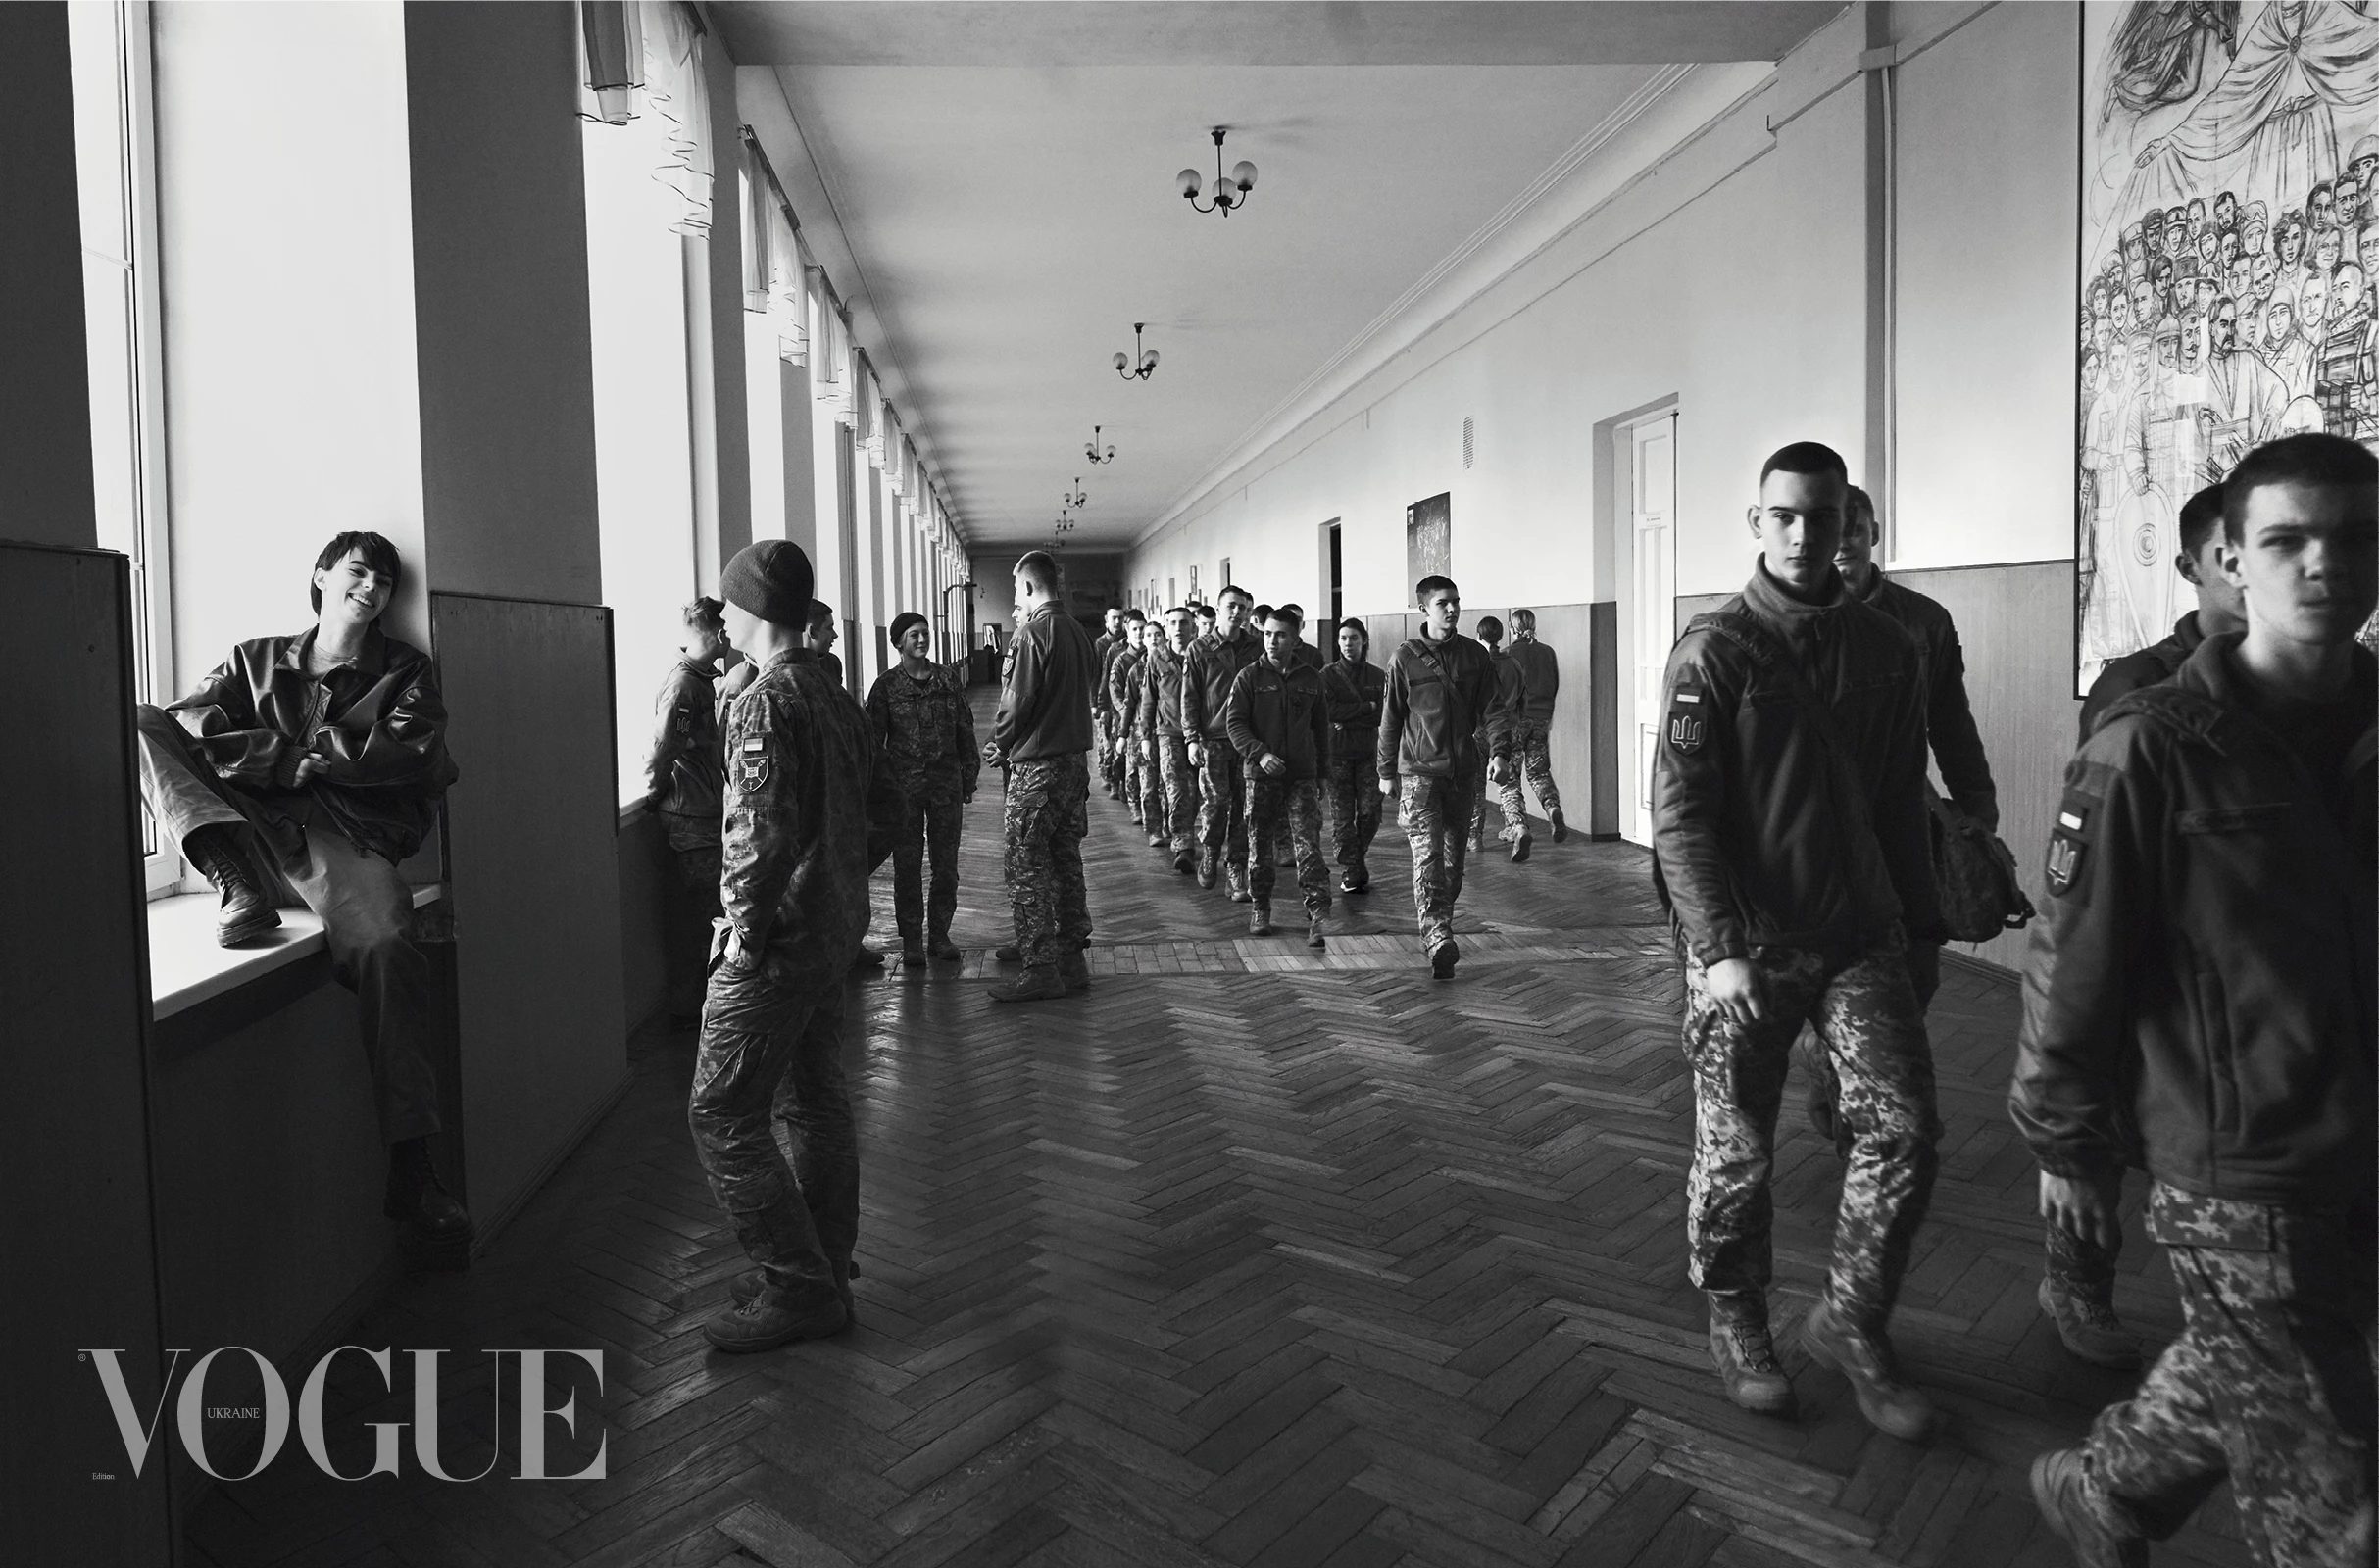 Курсанти Військового ліцею імені Івана Богуна. Фото: Бретт Ллойд, Vogue, Україна8